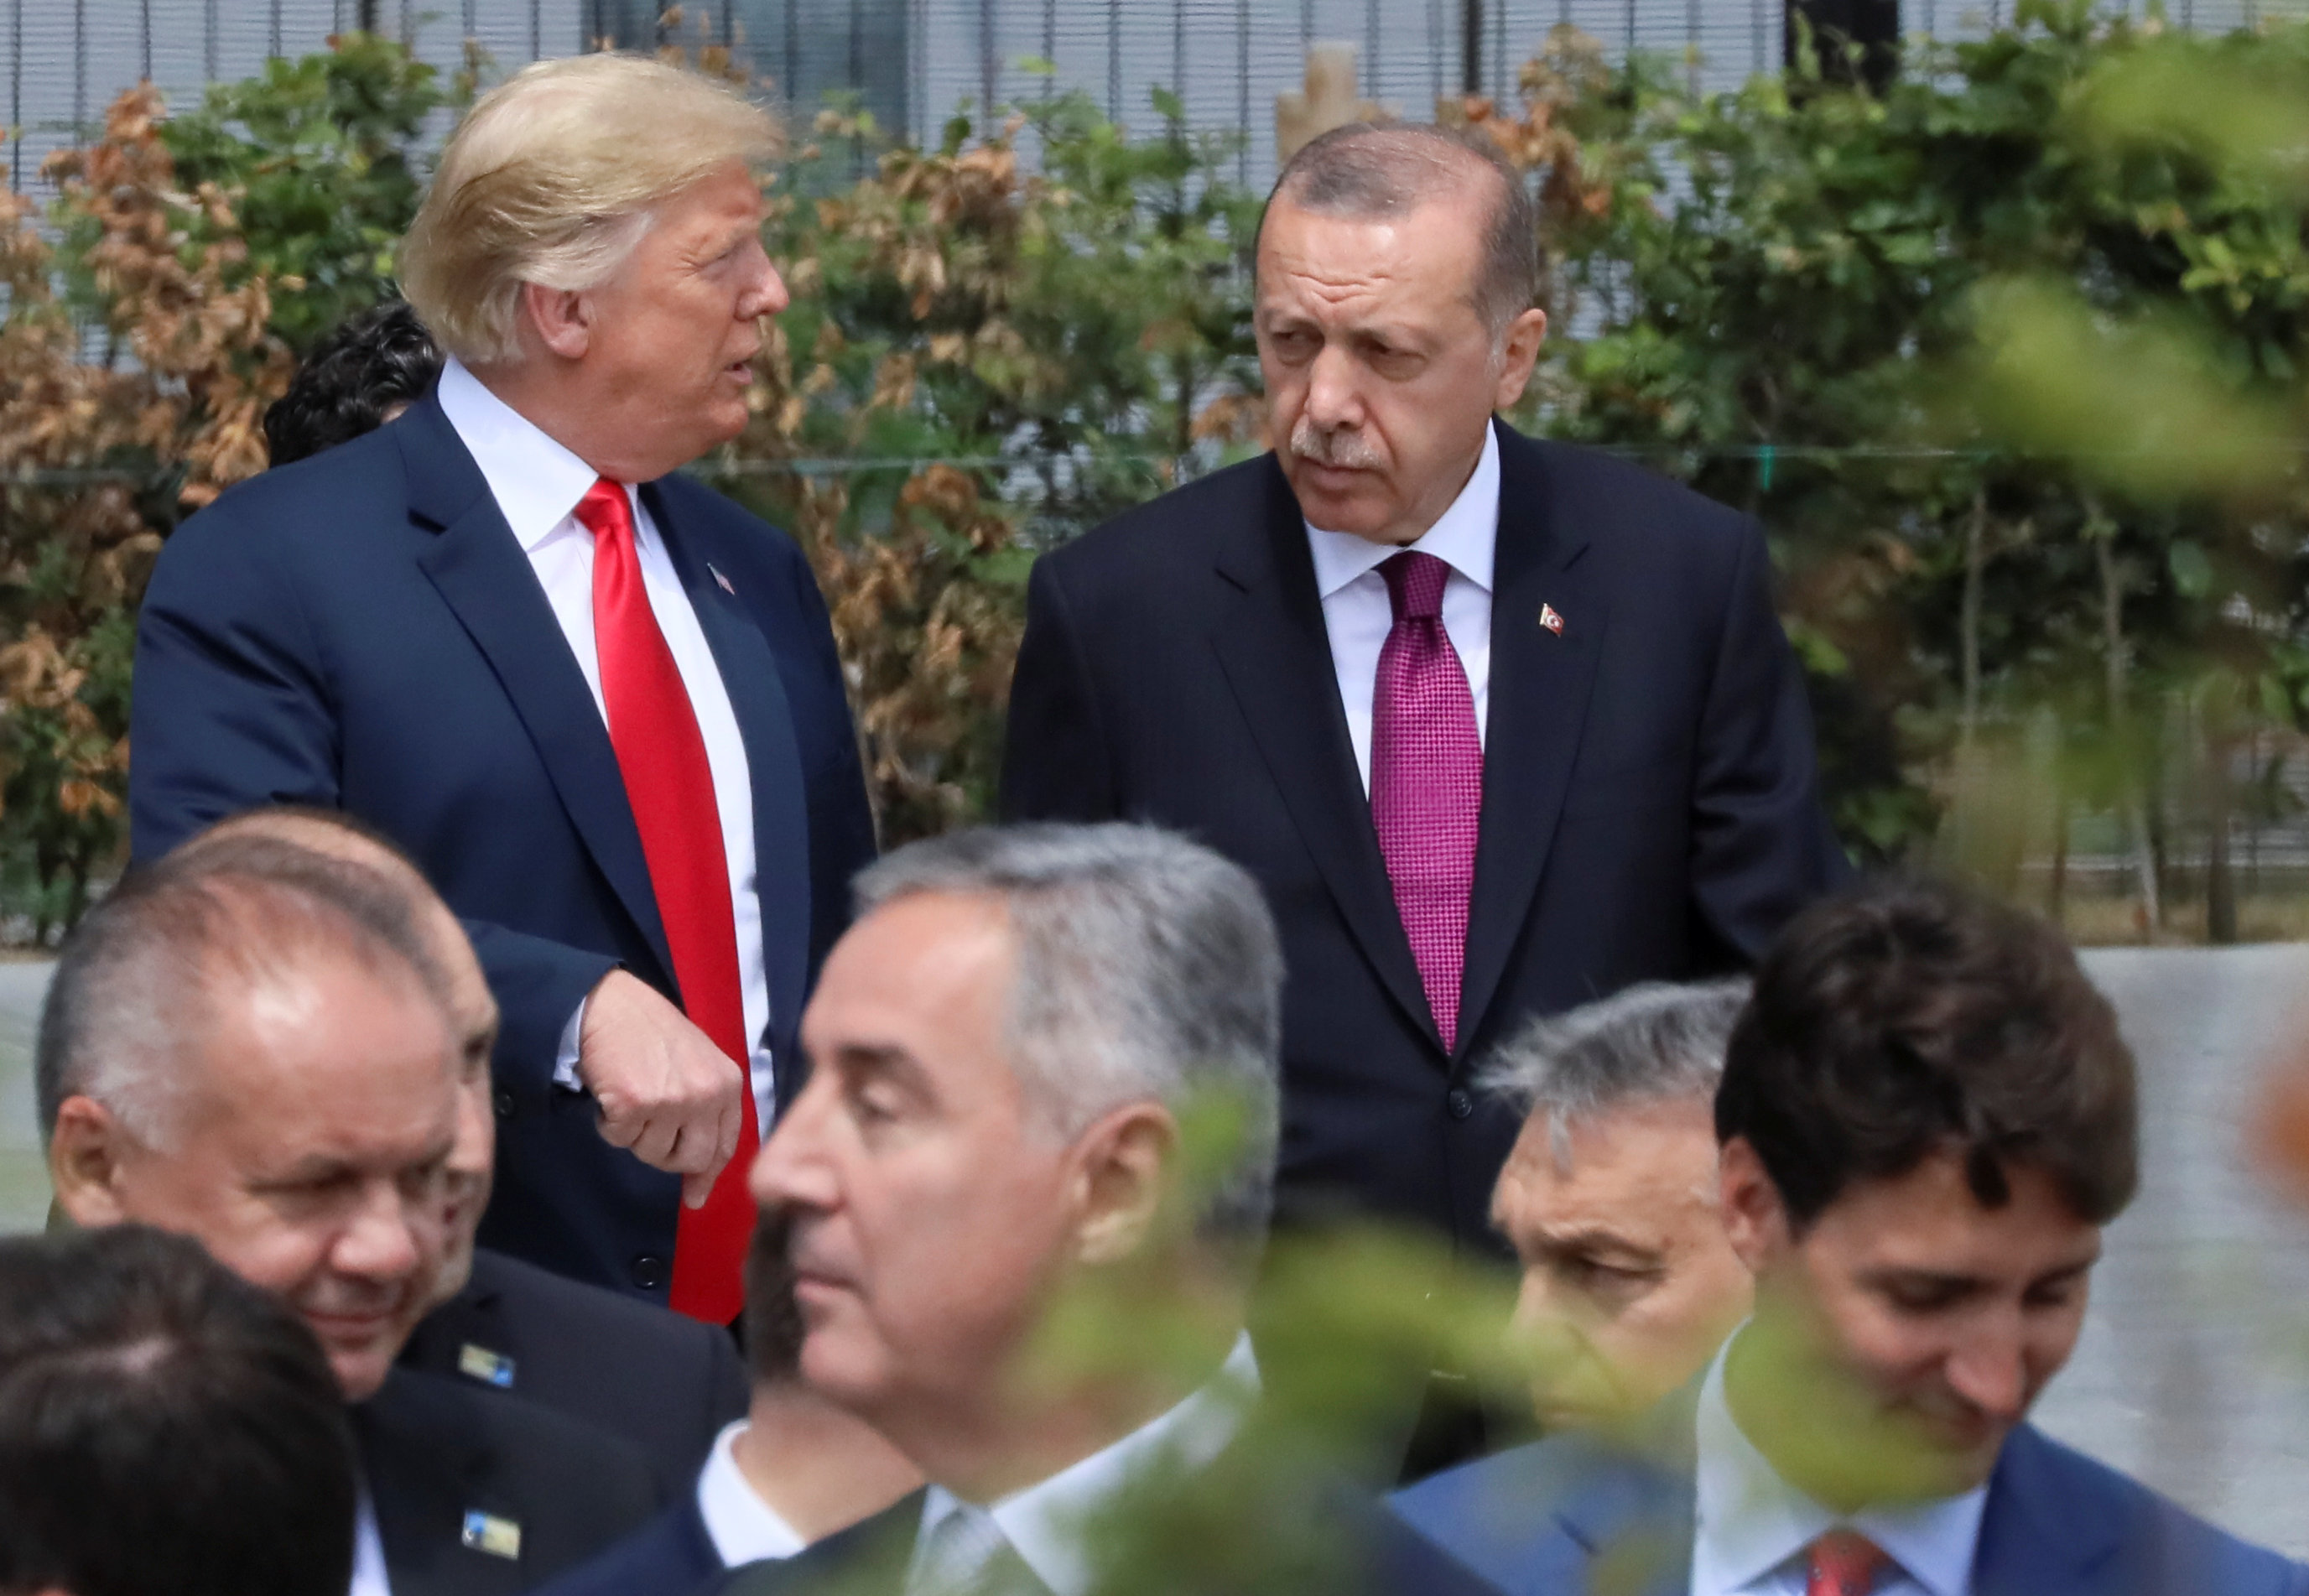 لقاء سابق بين الرئيس التركي رجب طيب أردوغان مع الرئيس الأميركي دونالد ترامب خلال قمة حلف شمال الأطلسي في بروكسل. رينهارد كراوس/ رويترز 